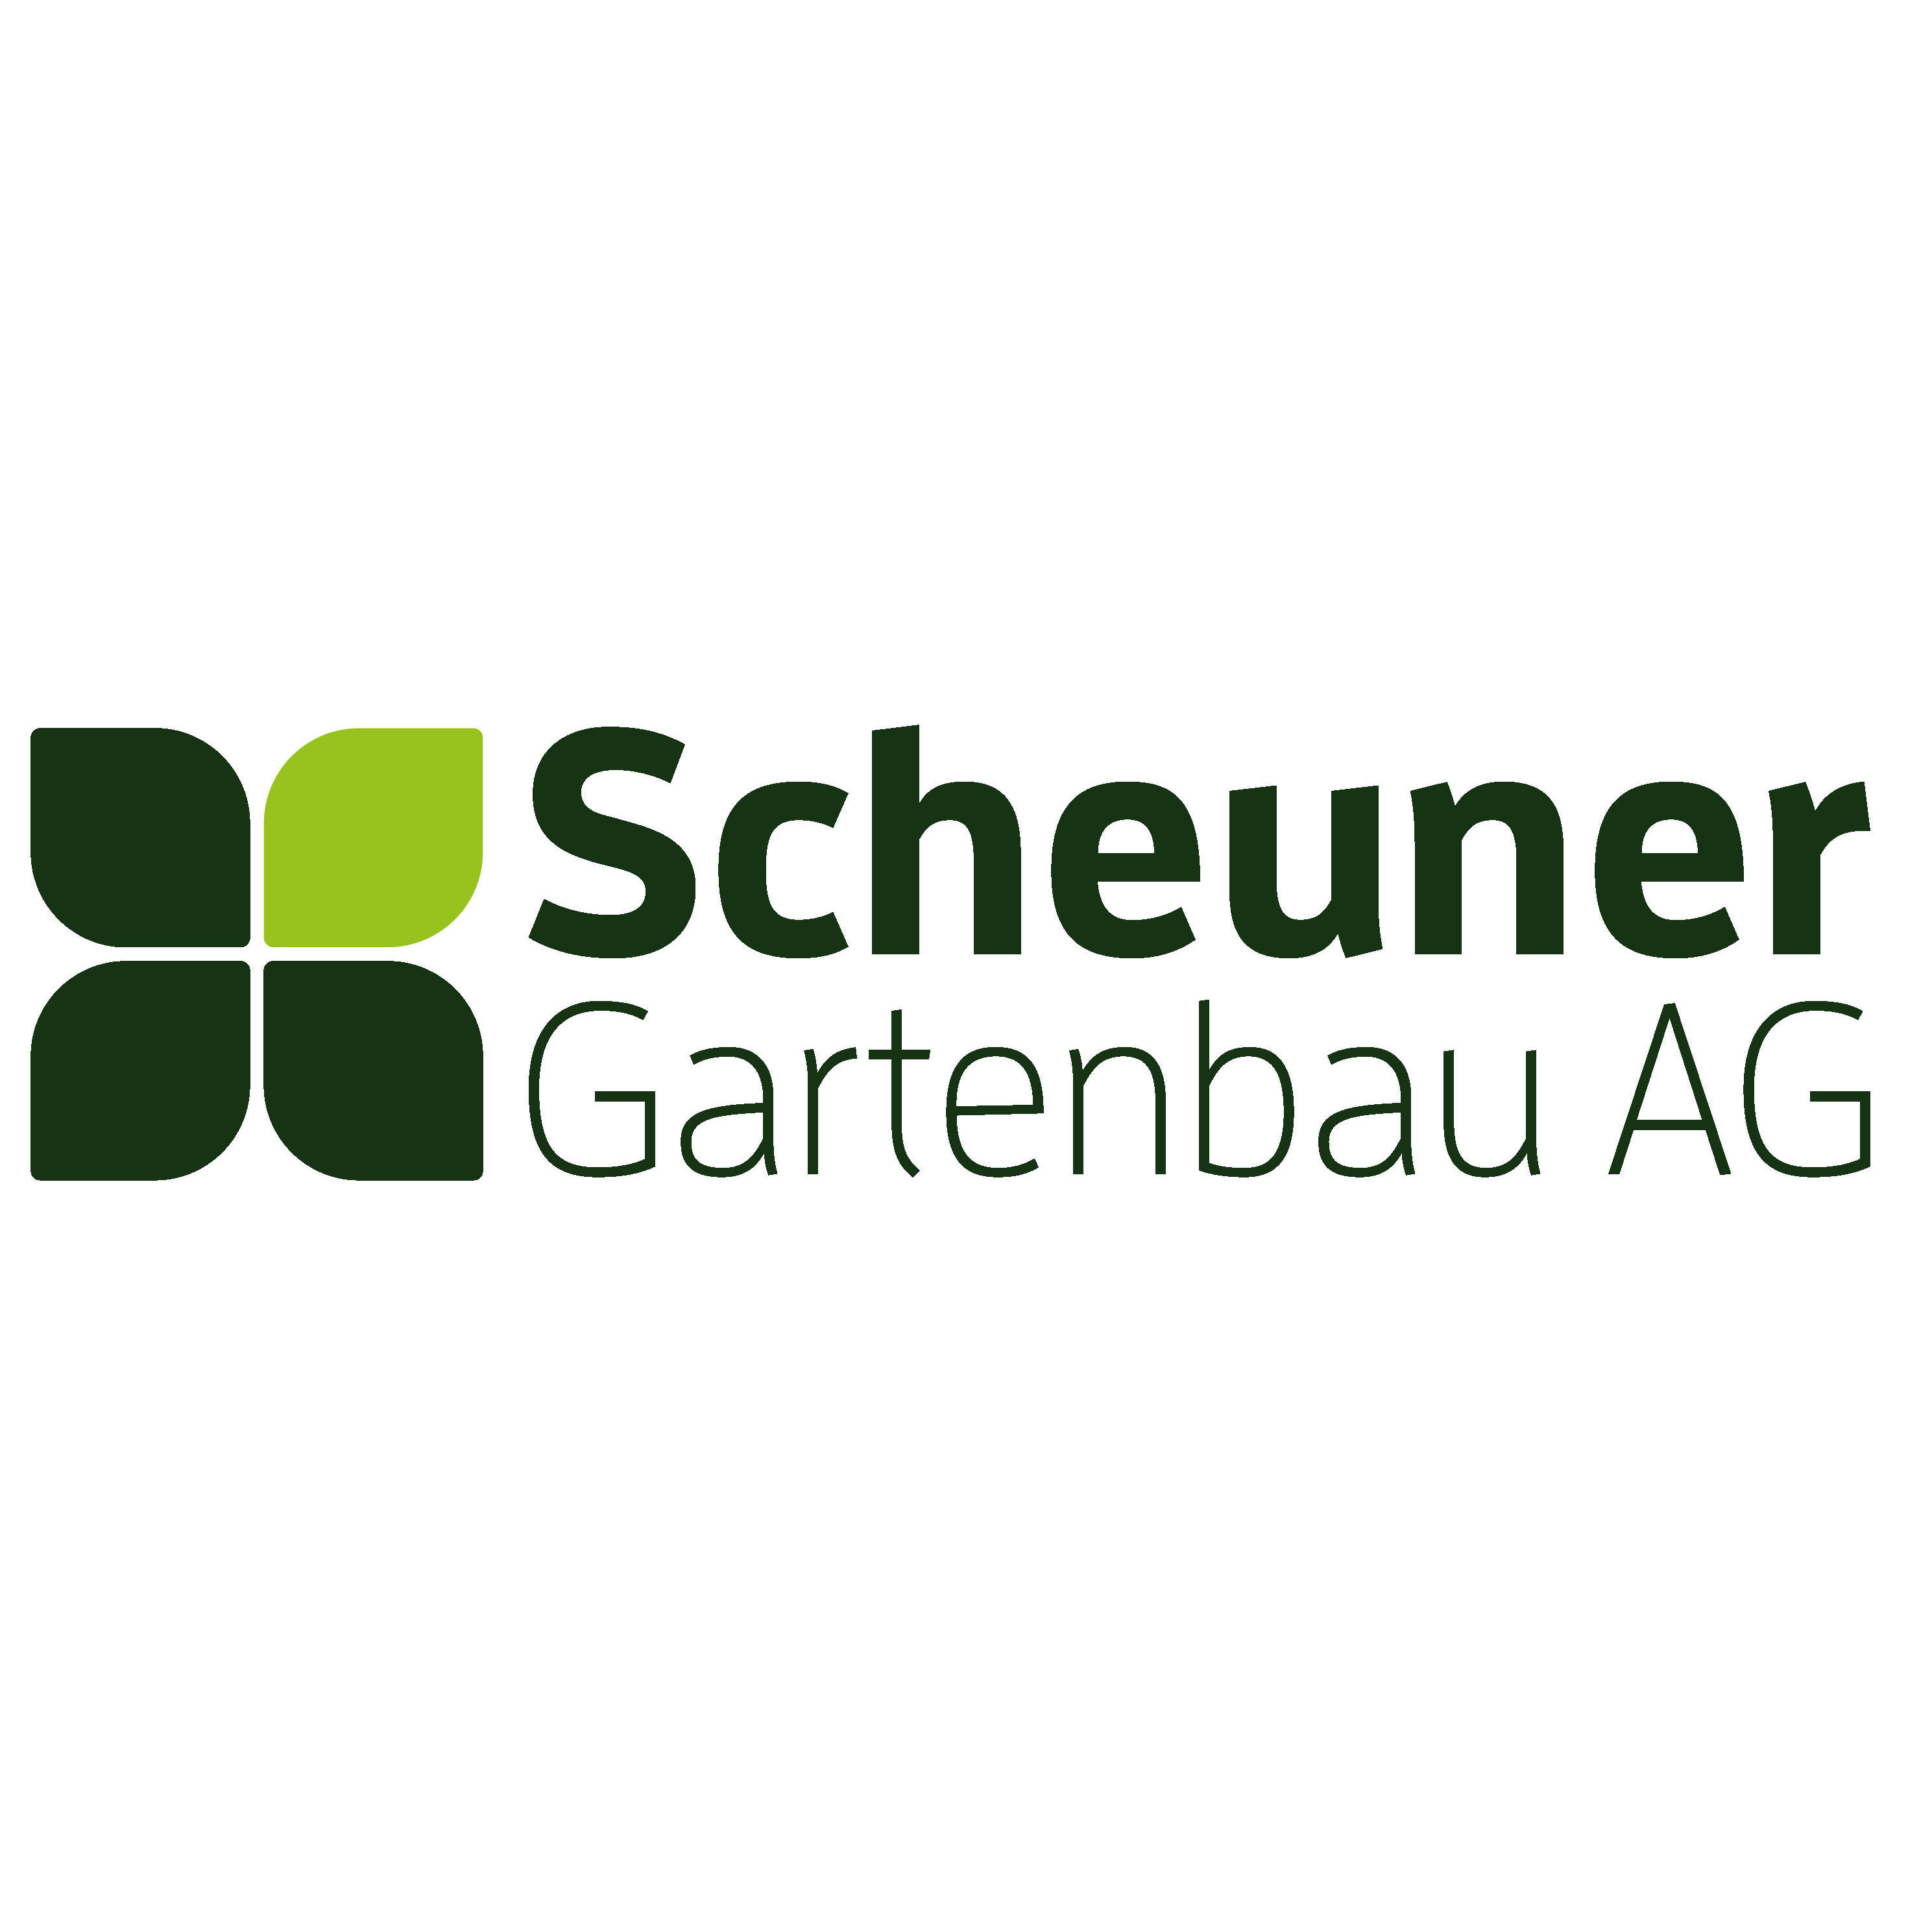 Scheuner Gartenbau AG - Landscape Designer - Bern - 031 351 75 76 Switzerland | ShowMeLocal.com